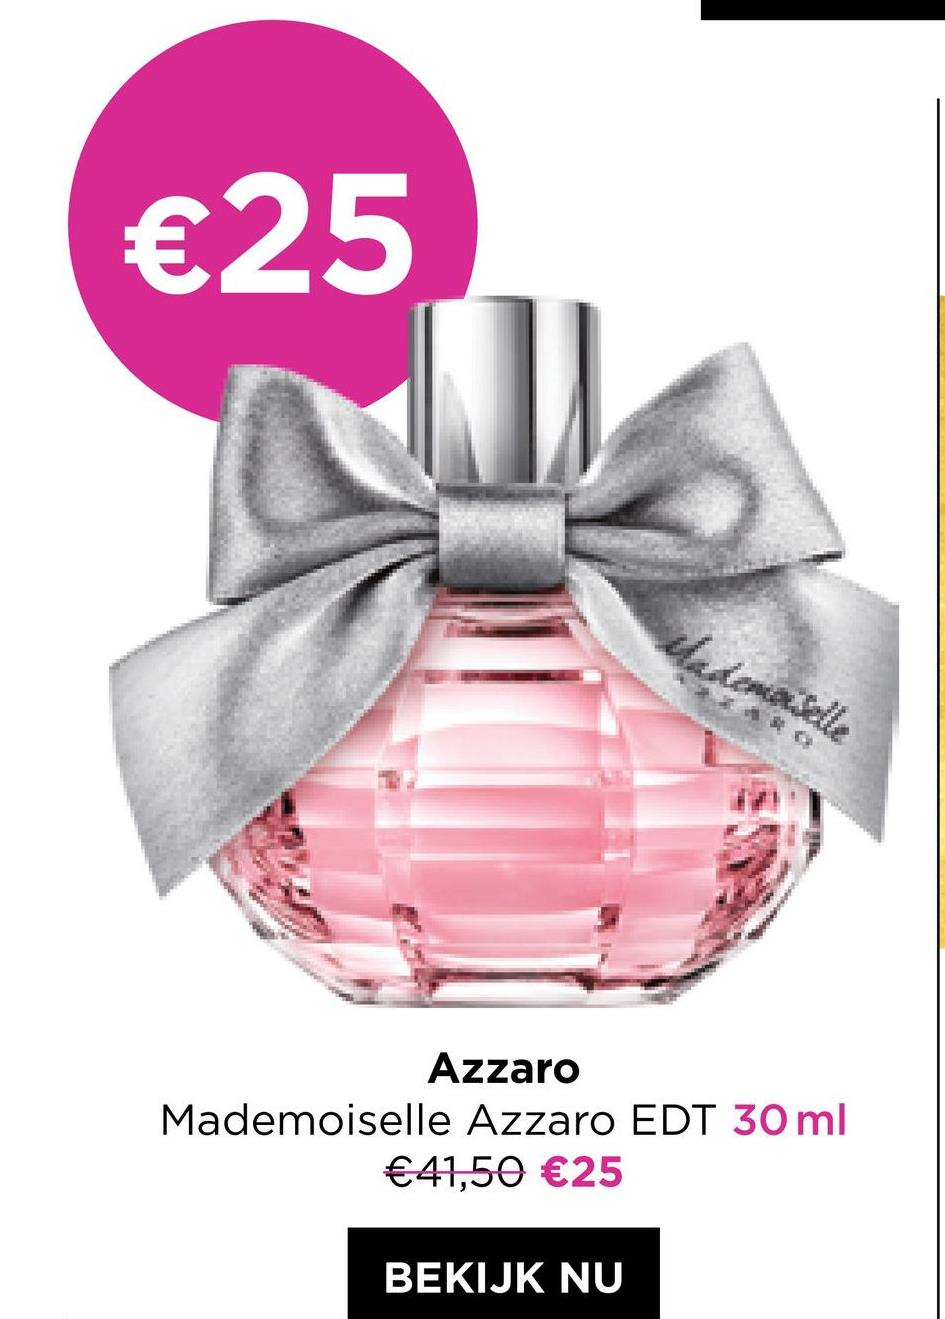 €25
Mademoiselle
Azzaro
Mademoiselle Azzaro EDT 30 ml
€41,50 €25
BEKIJK NU